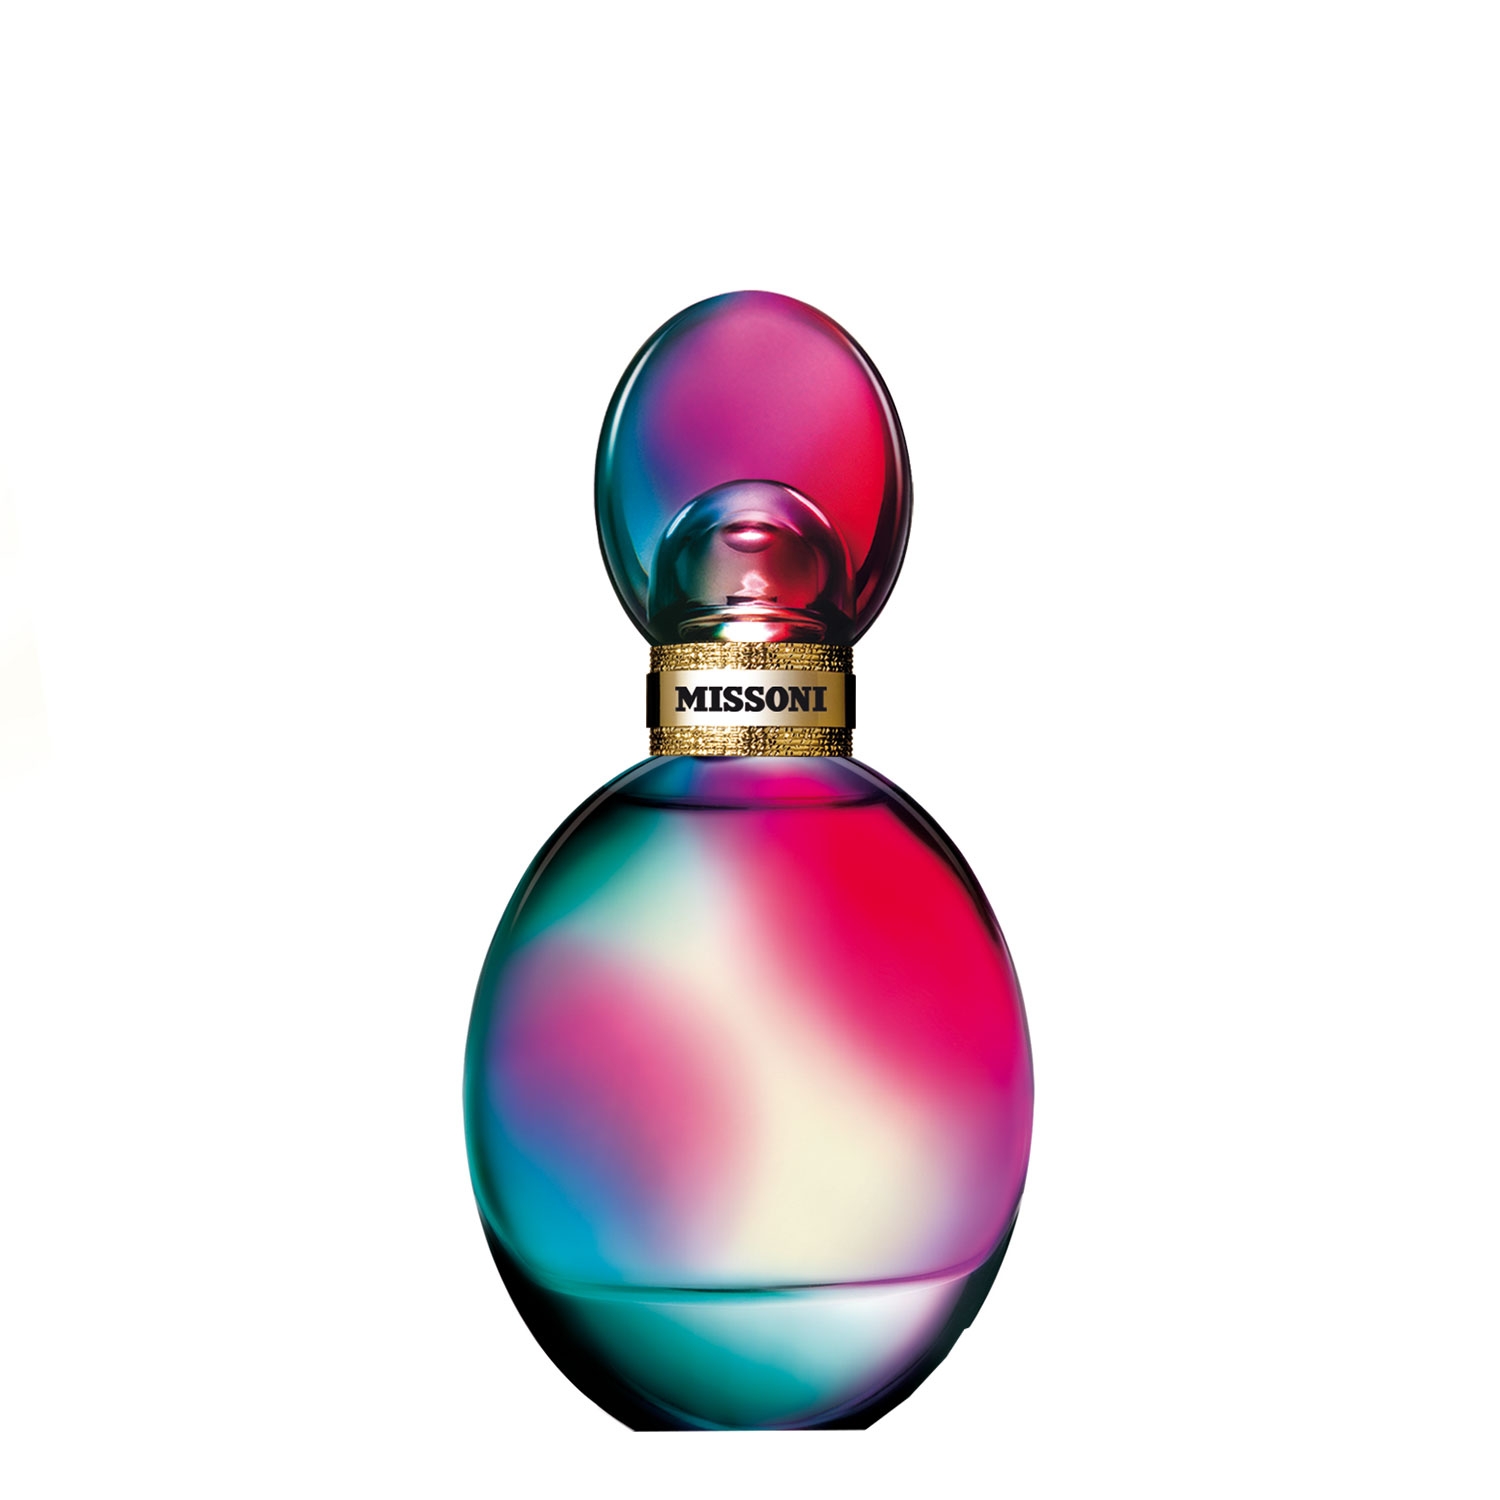 Produktbild von Missoni Femme - Eau de Parfum